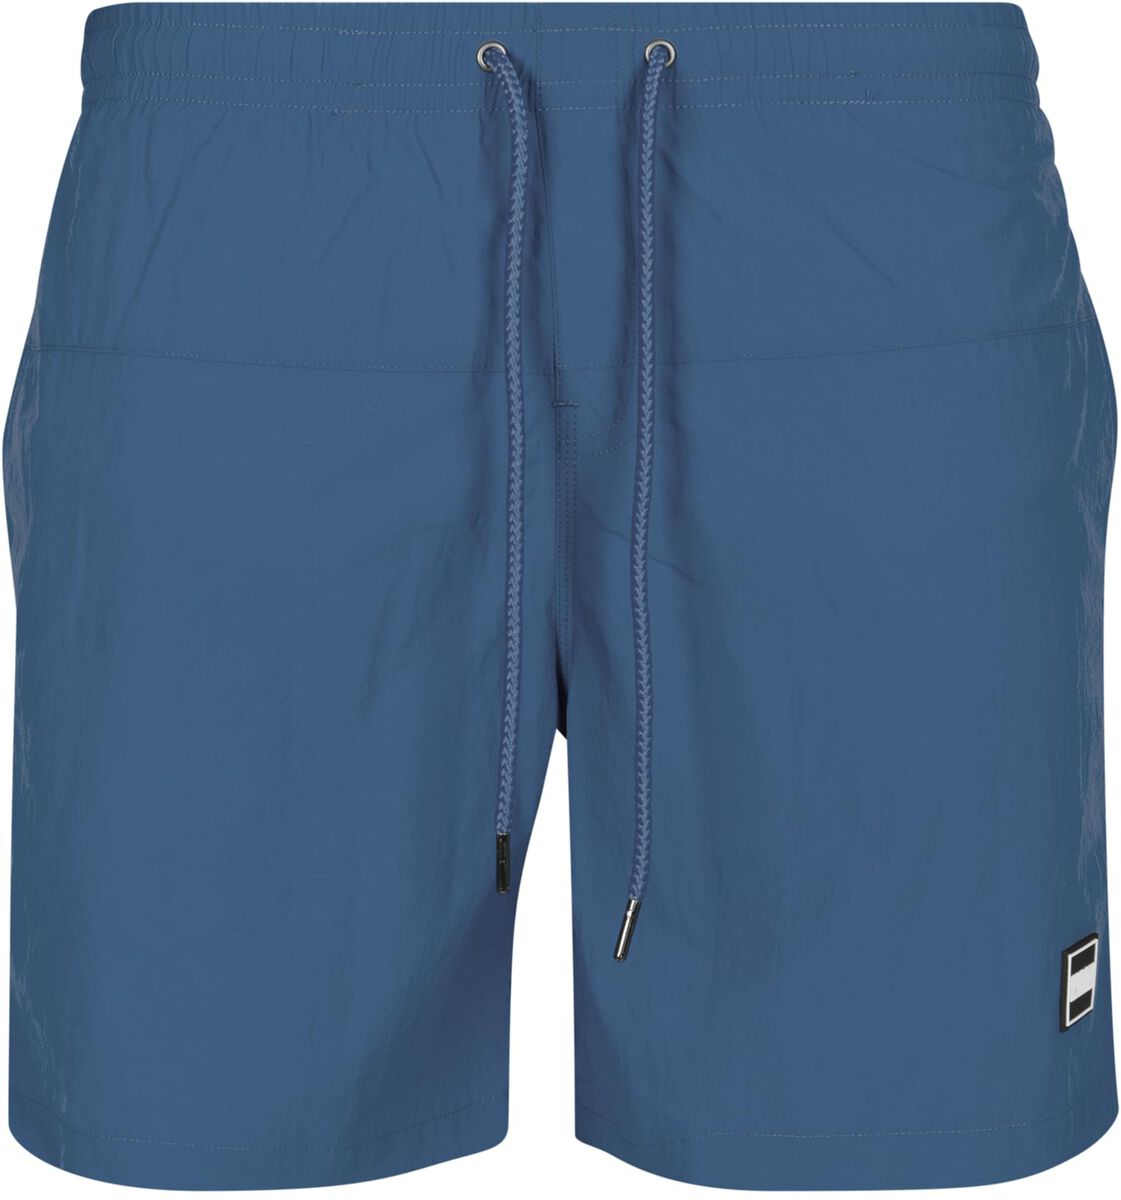 Urban Classics Badeshort - Block Swim Shorts - S bis 4XL - für Männer - Größe S - blau